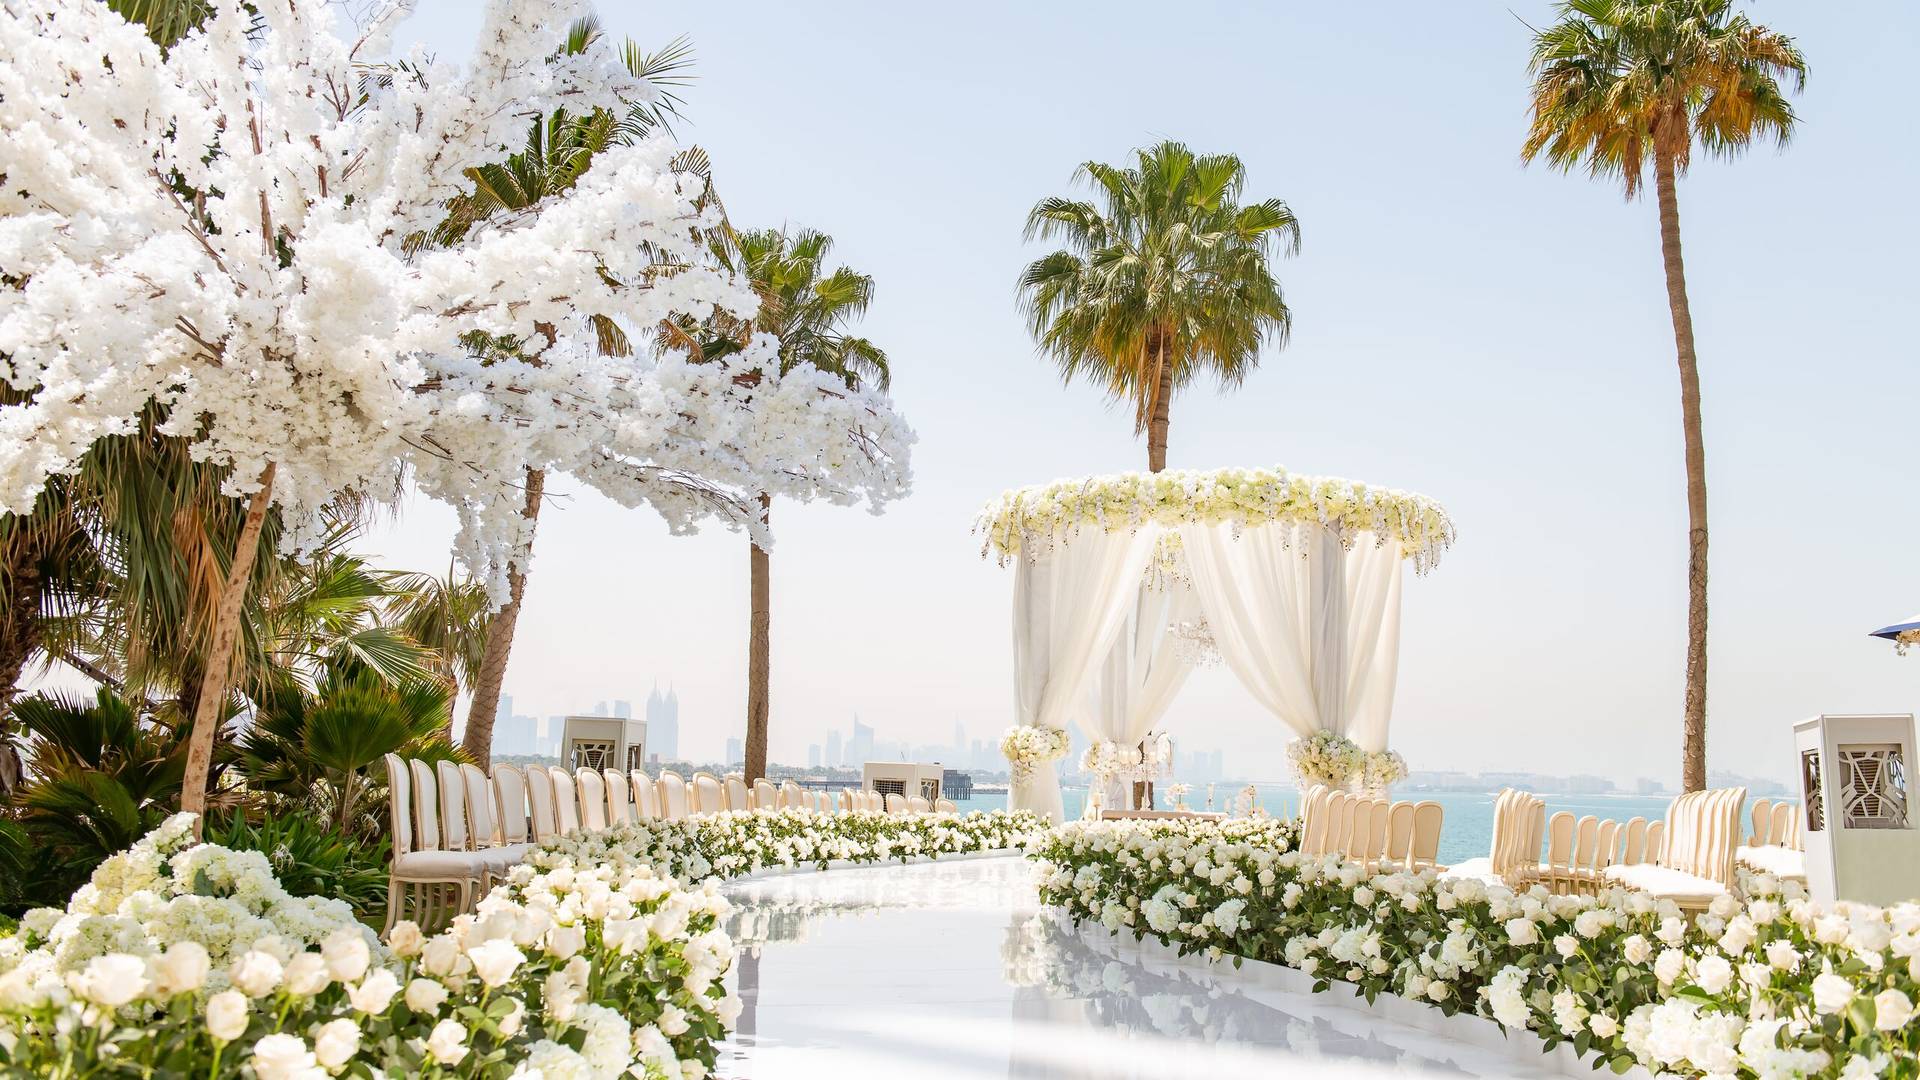 floral wedding décor at Burj Al Arab in Dubai | Wedifys